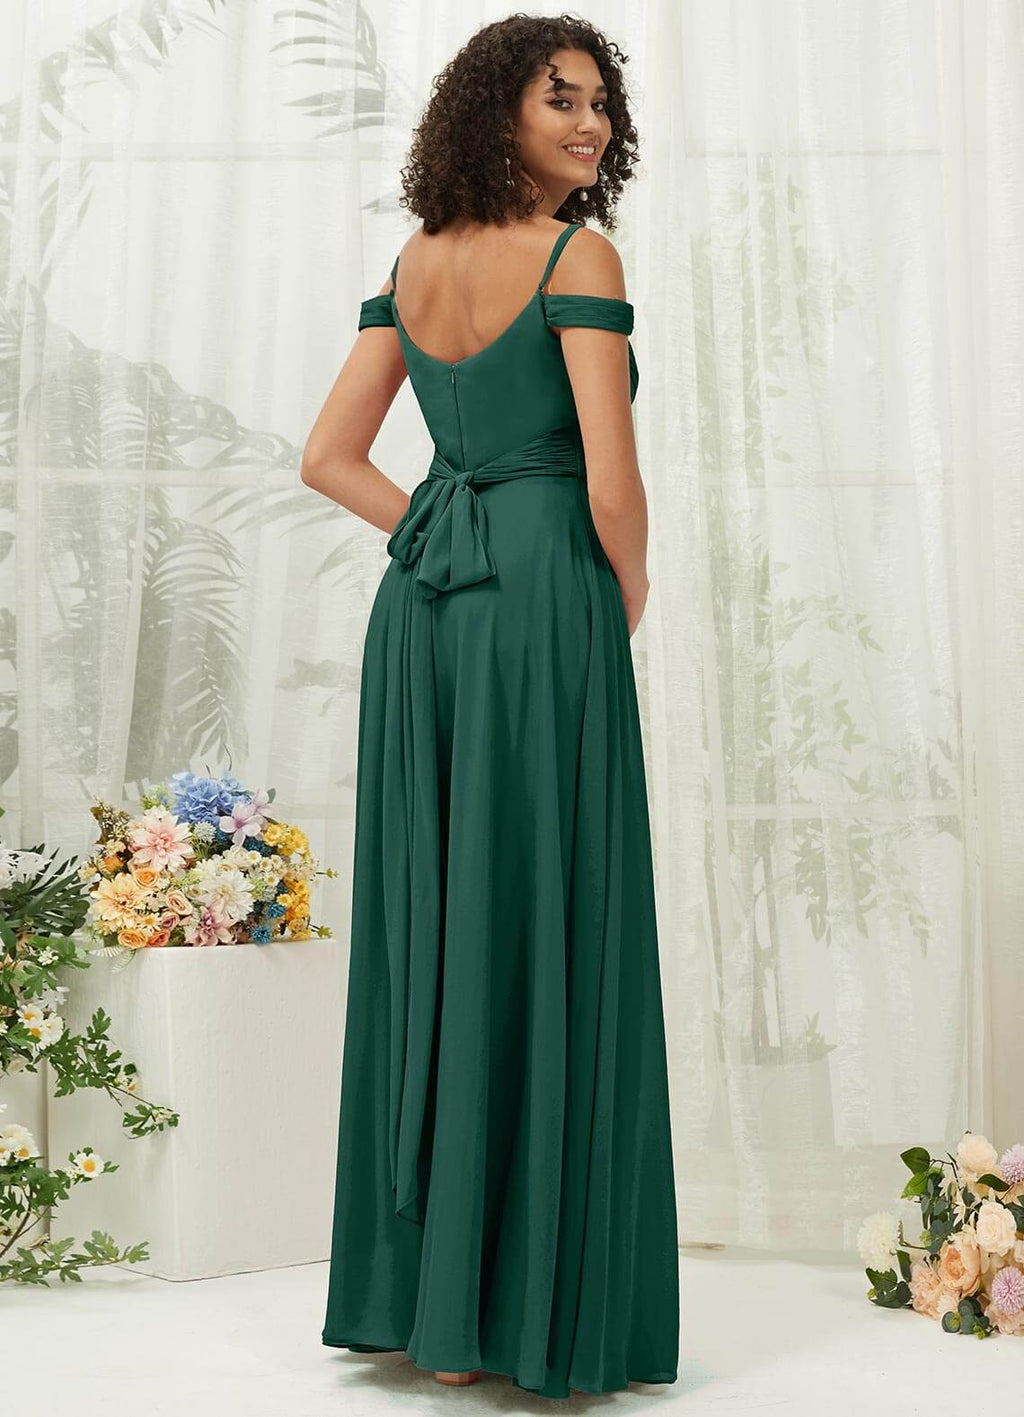 NZ Bridal Convertible Emerald Green Chiffon bridesmaid dresses TC30219 Celia a